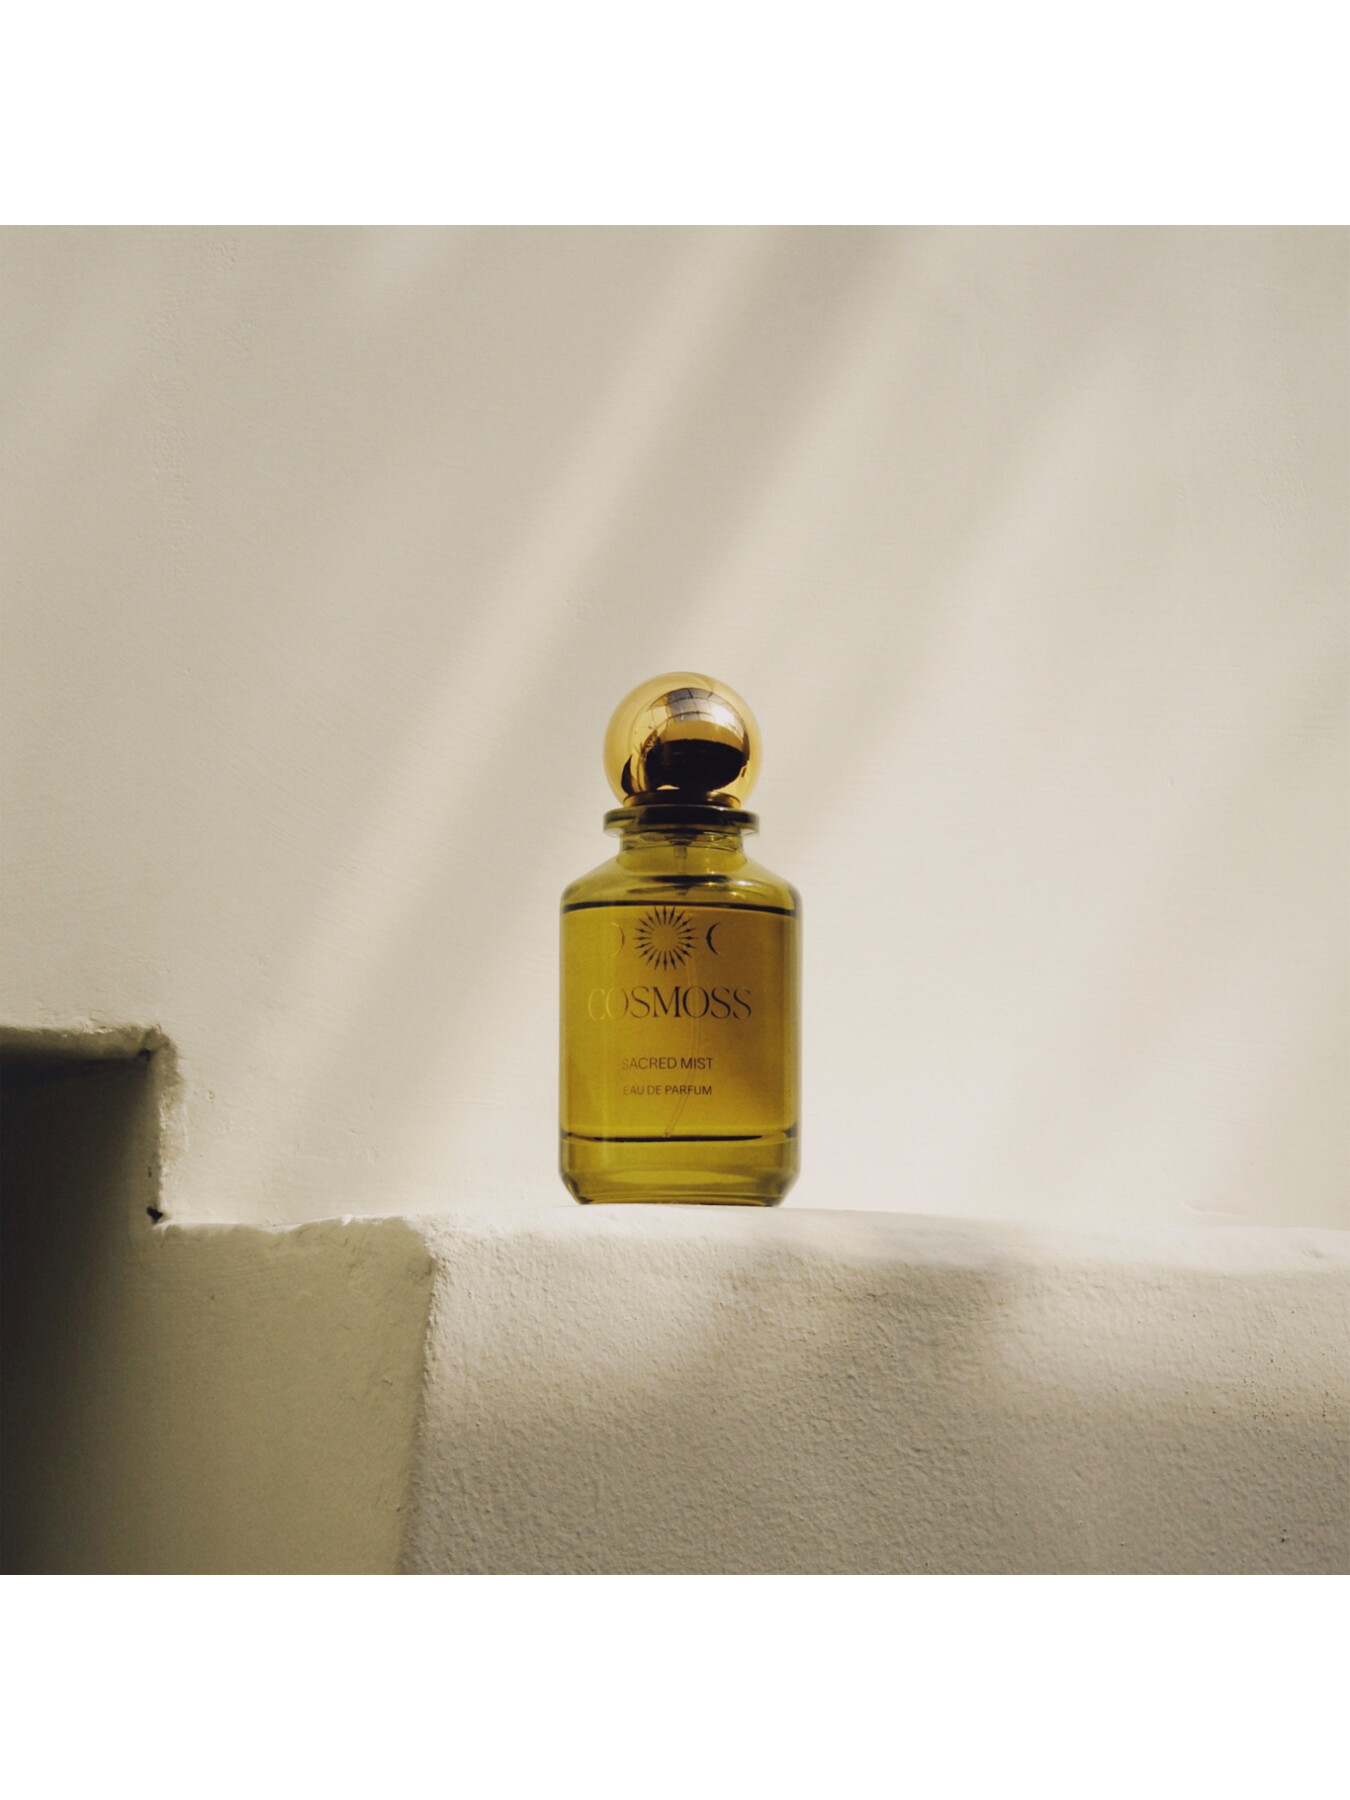 COSMOSS Sacred Mist Eau De Parfum 100ml | Women's Fragrances | Fenwick